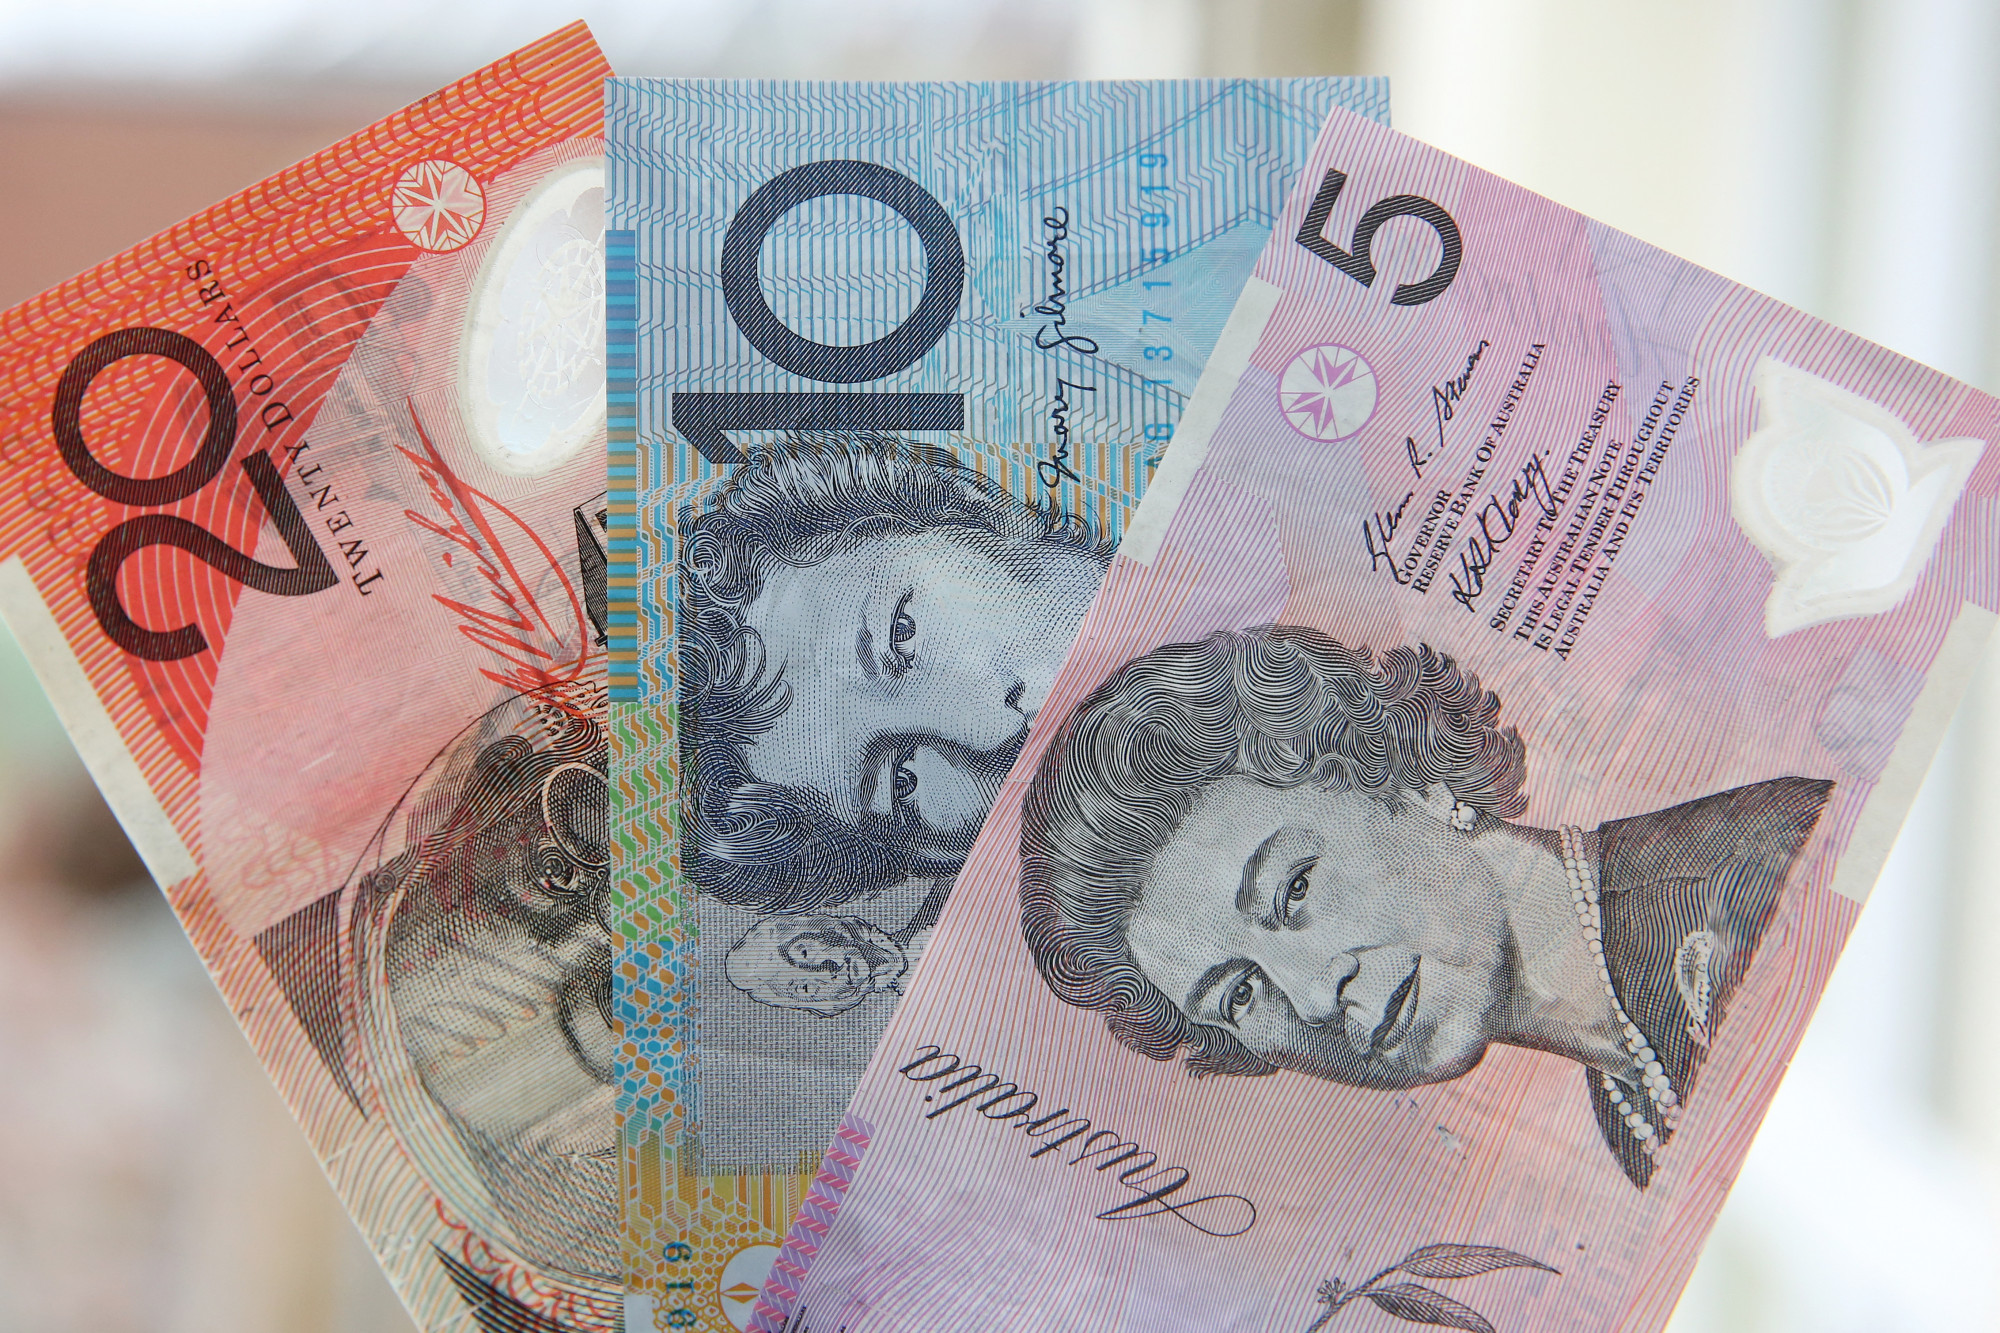 Lekerül az ausztrálok egyik pénzéről a brit uralkodó portréja